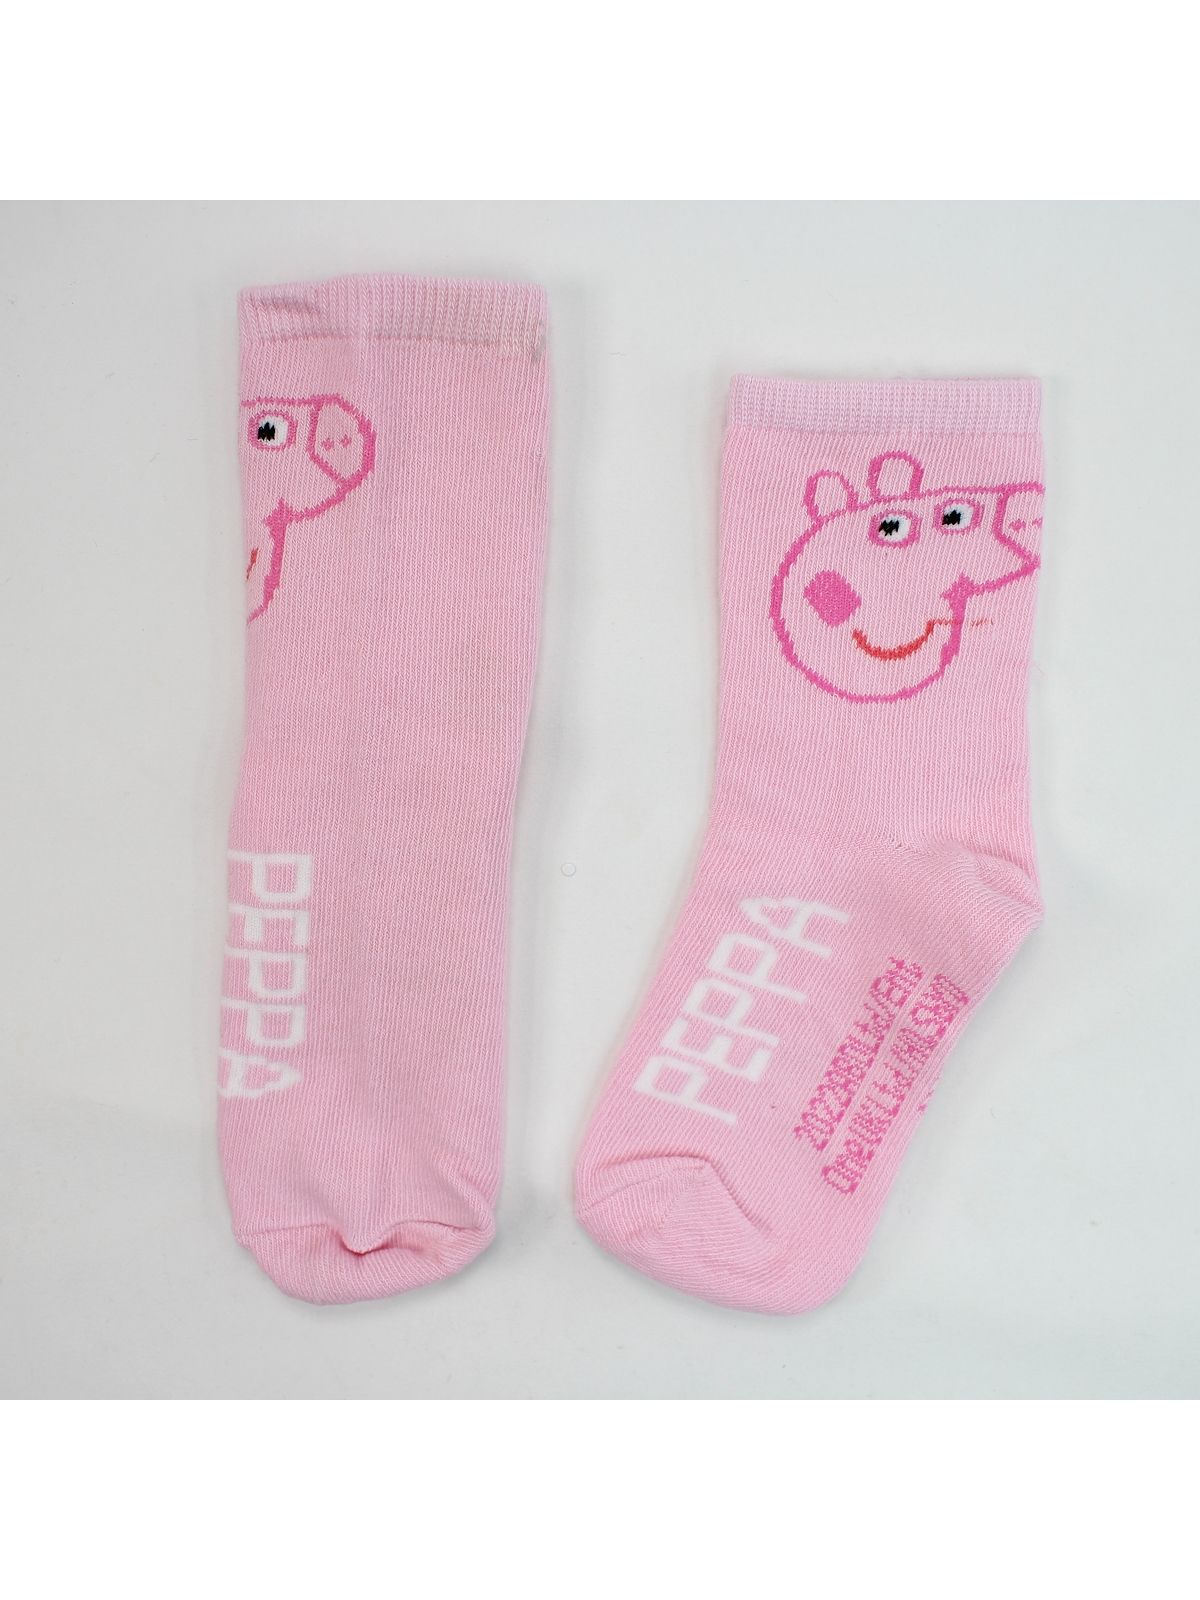 Peppa Pig Pair of socks